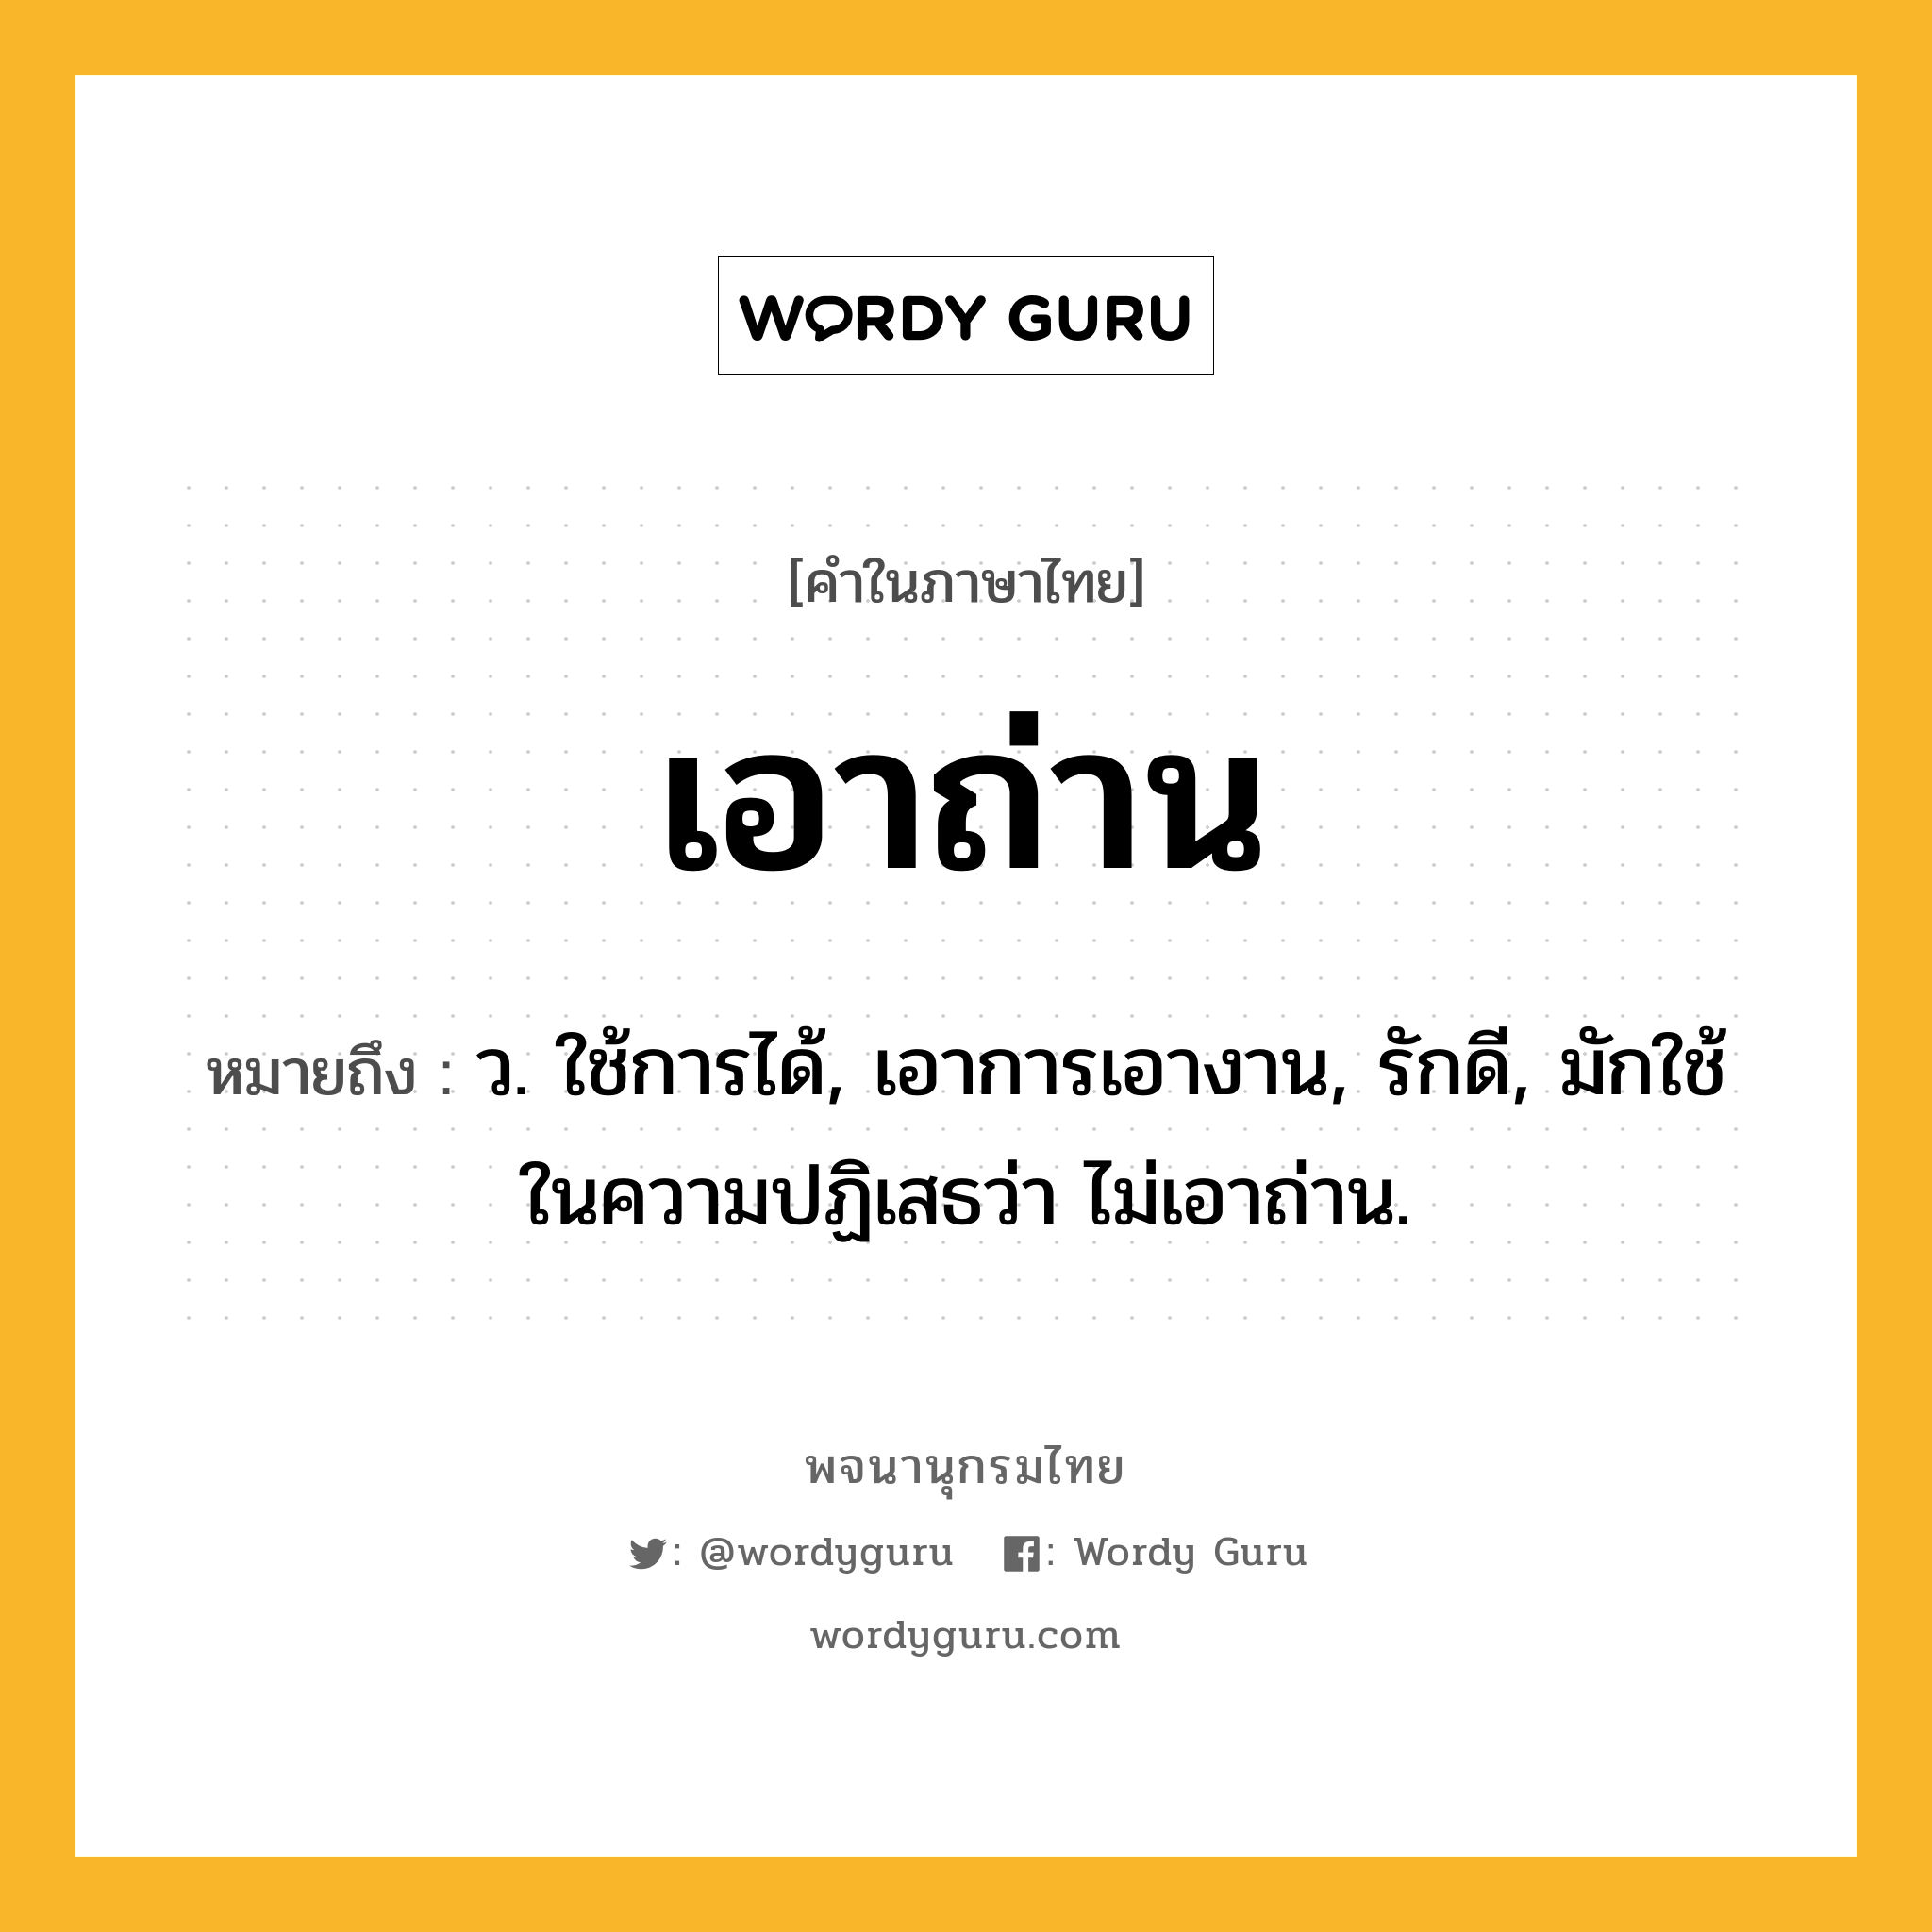 เอาถ่าน หมายถึงอะไร?, คำในภาษาไทย เอาถ่าน หมายถึง ว. ใช้การได้, เอาการเอางาน, รักดี, มักใช้ในความปฏิเสธว่า ไม่เอาถ่าน.